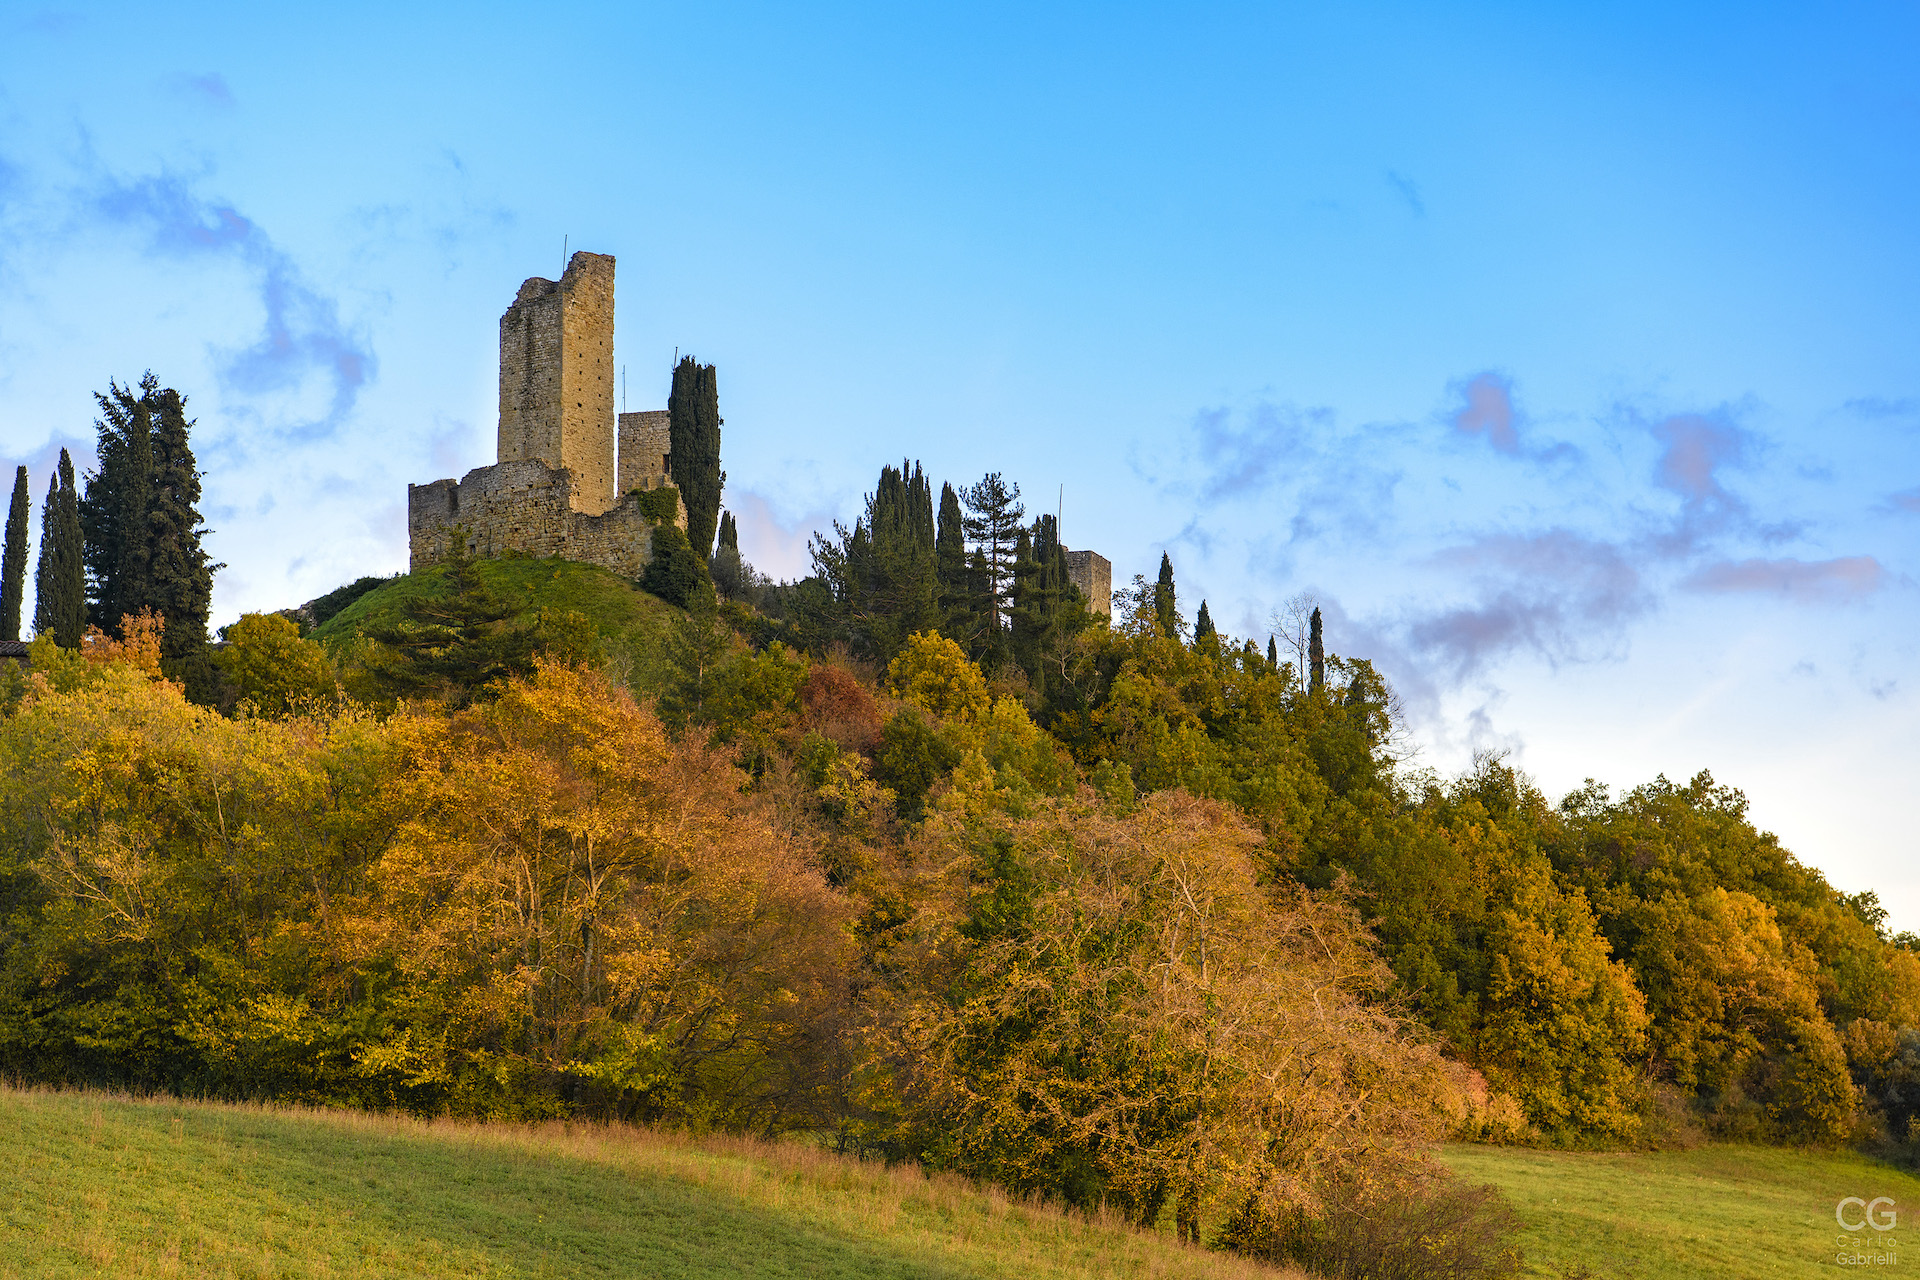 The Romena Castle